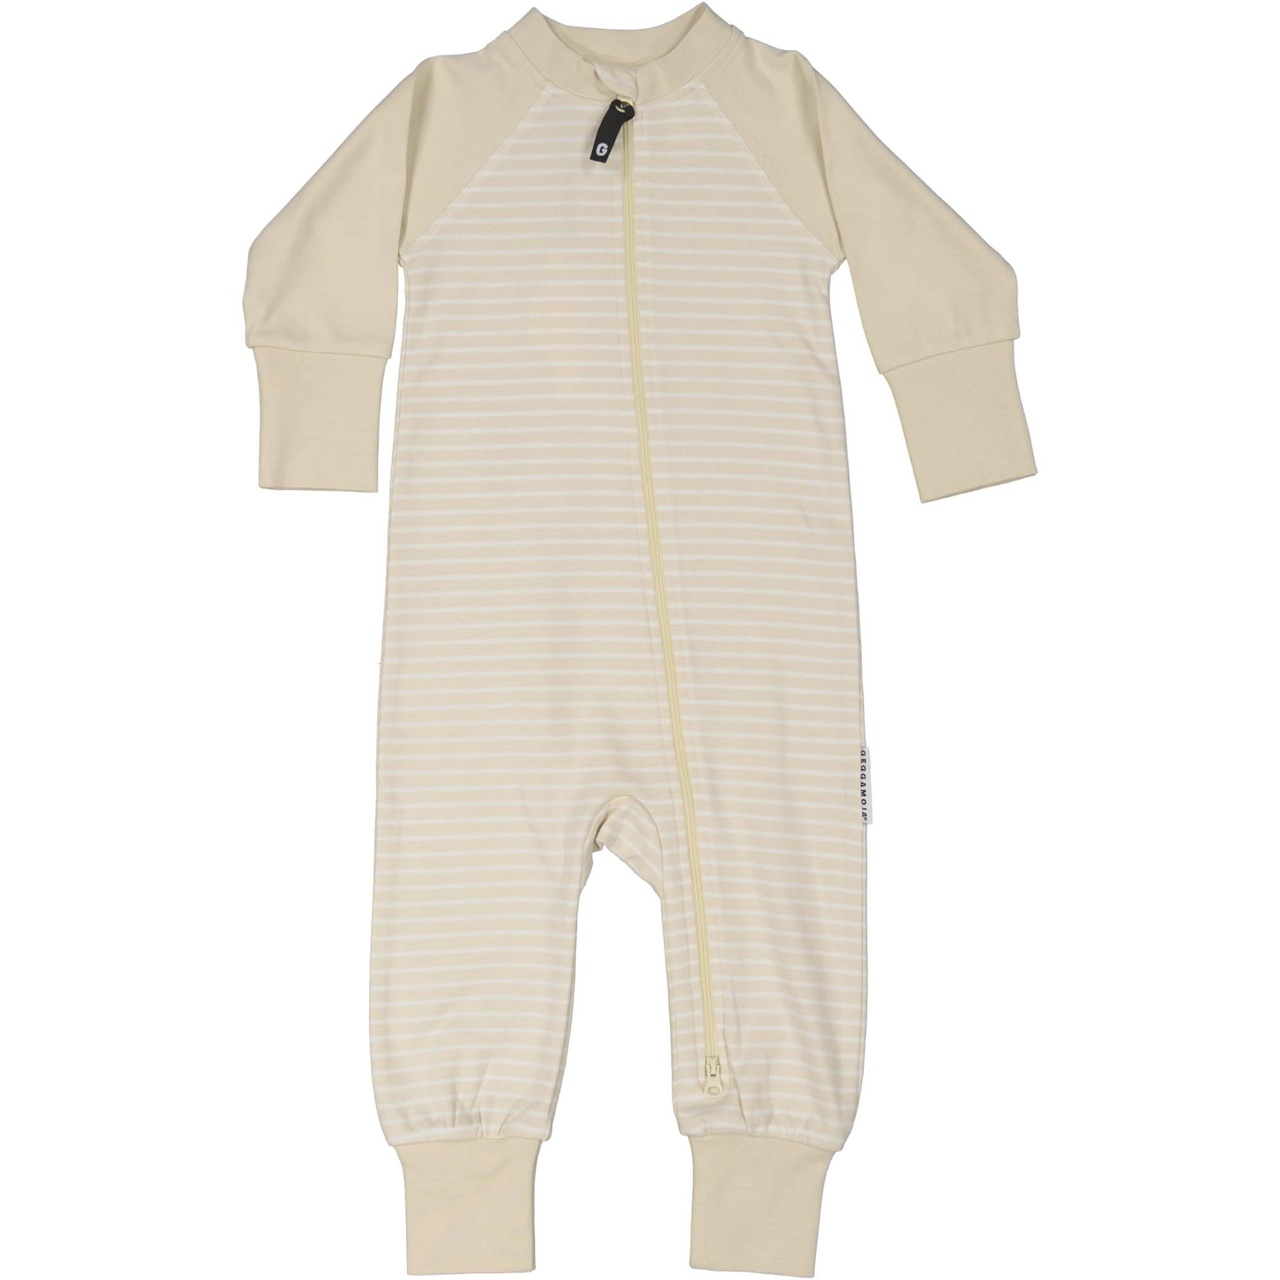 Pyjamas Two way zipper Beige/white 110/116